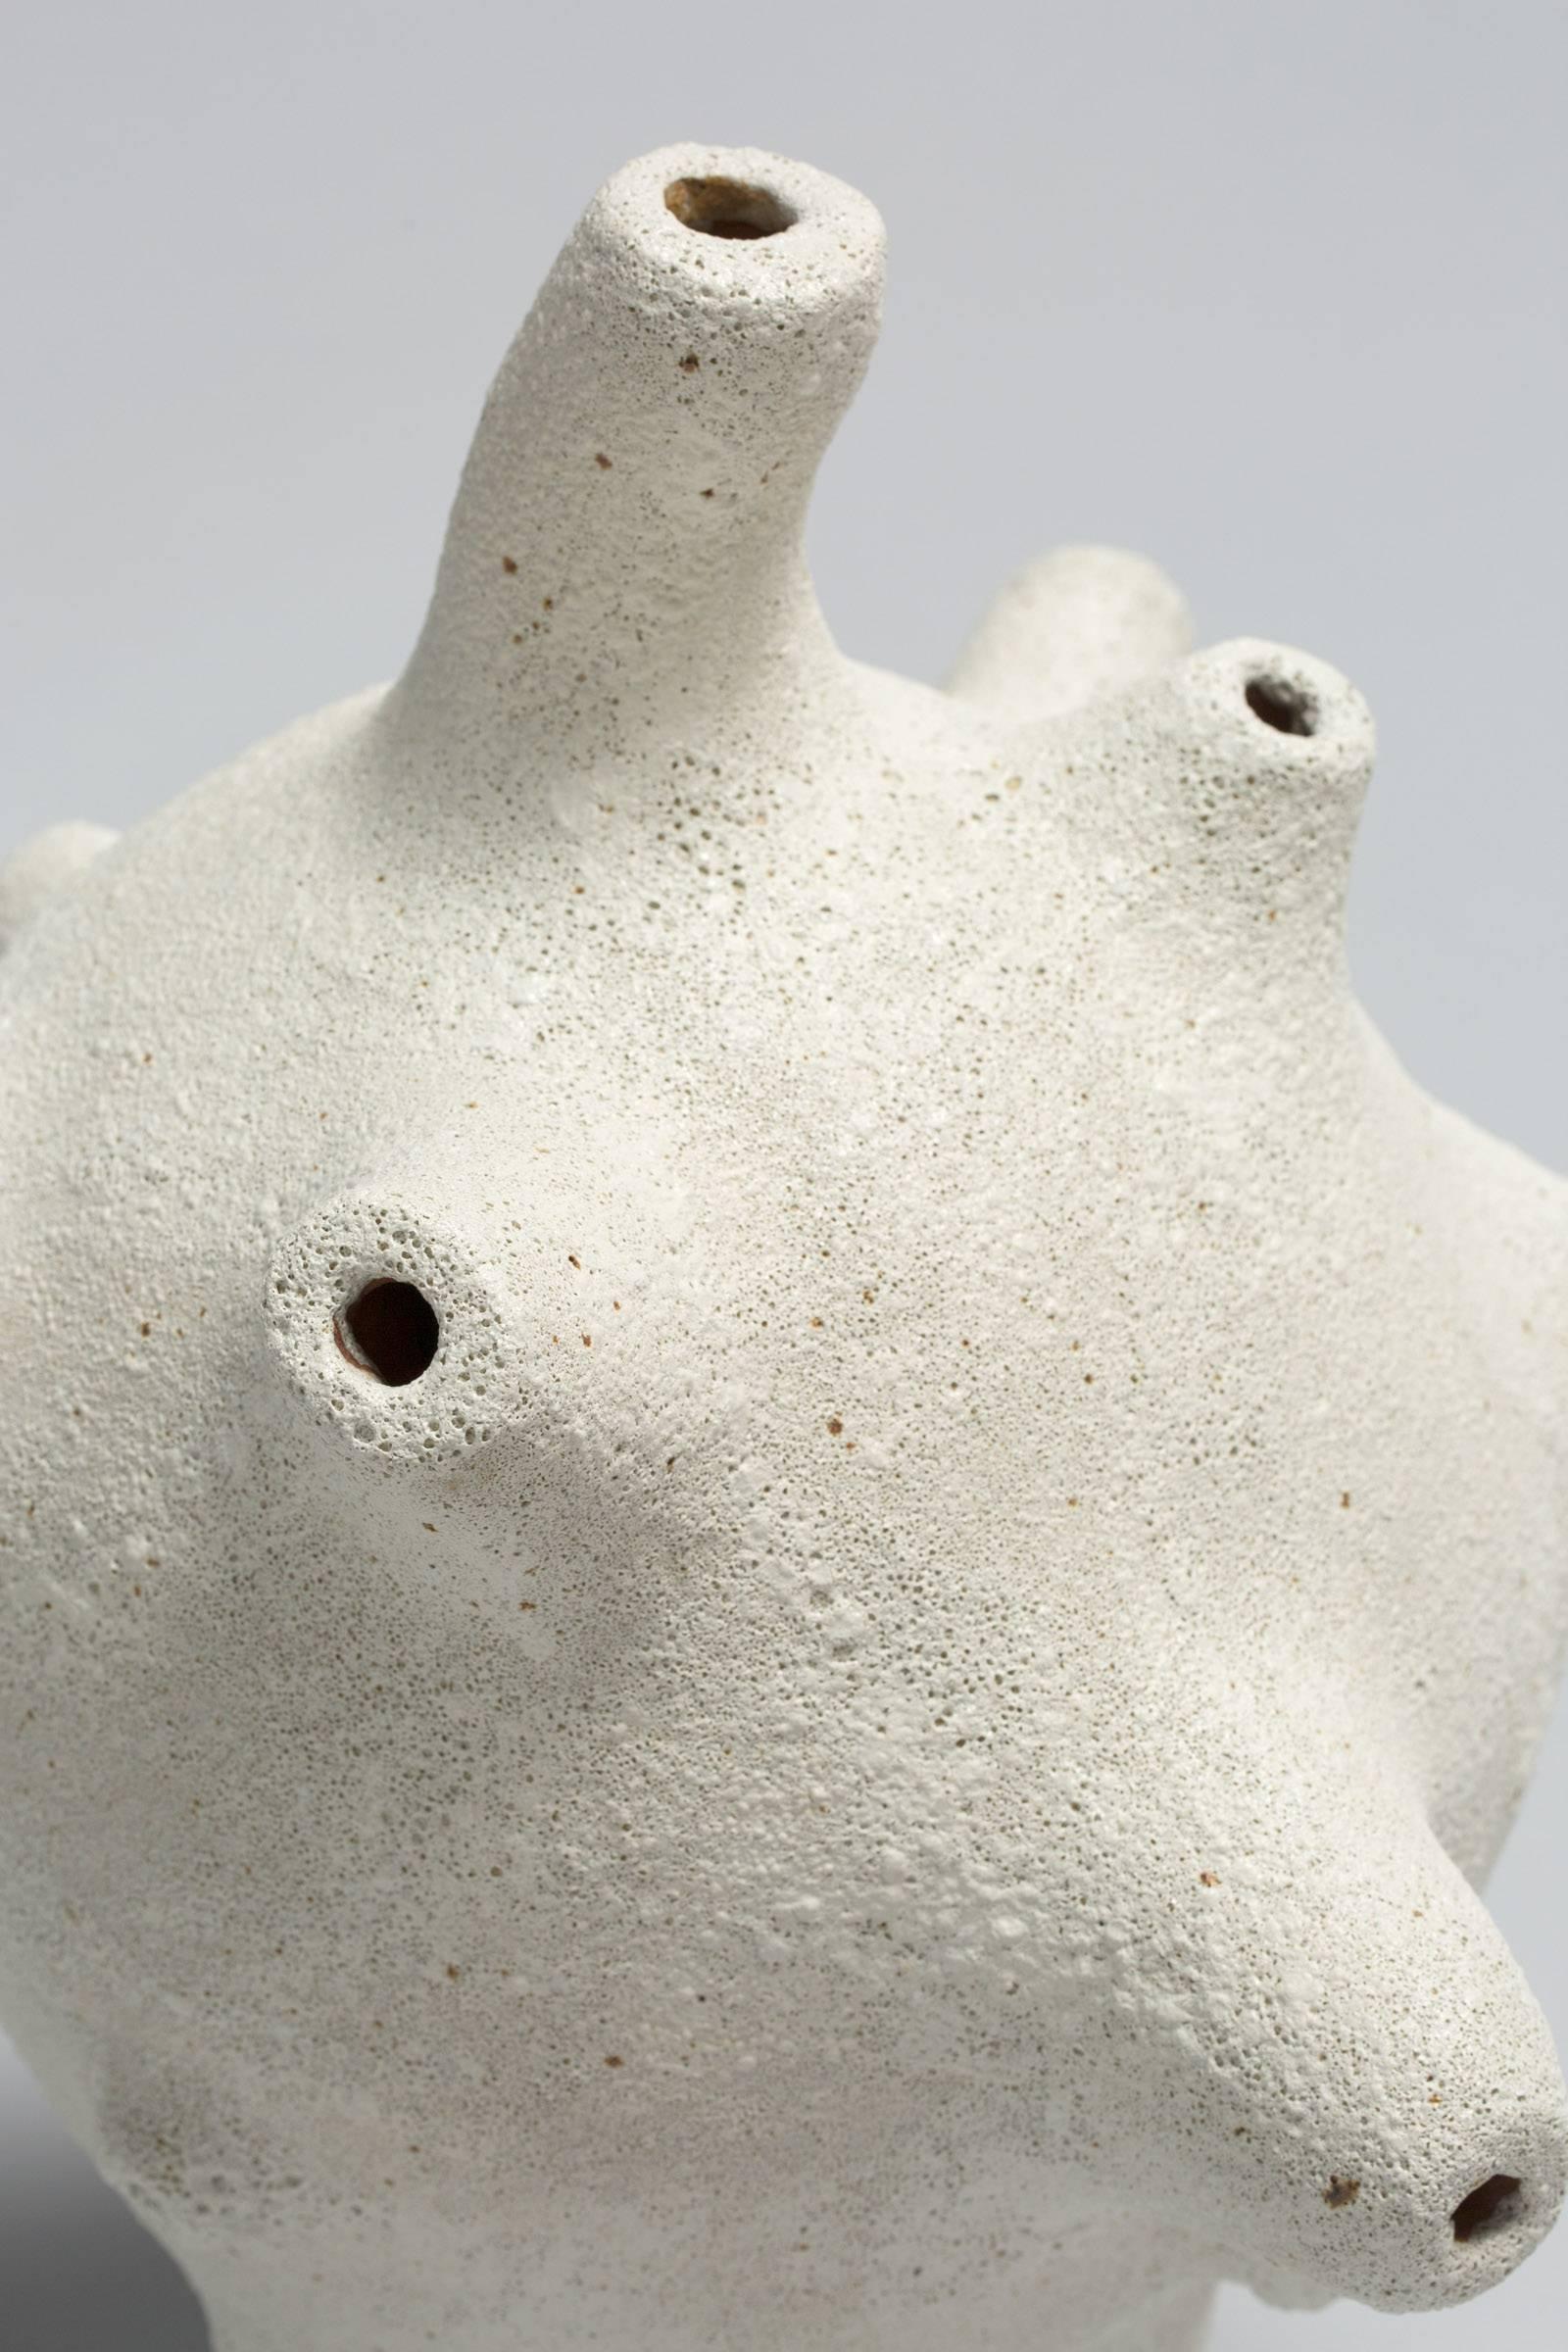 William Coggin, Pseudopodia 
Glazed ceramic stoneware
Dimensions: 18